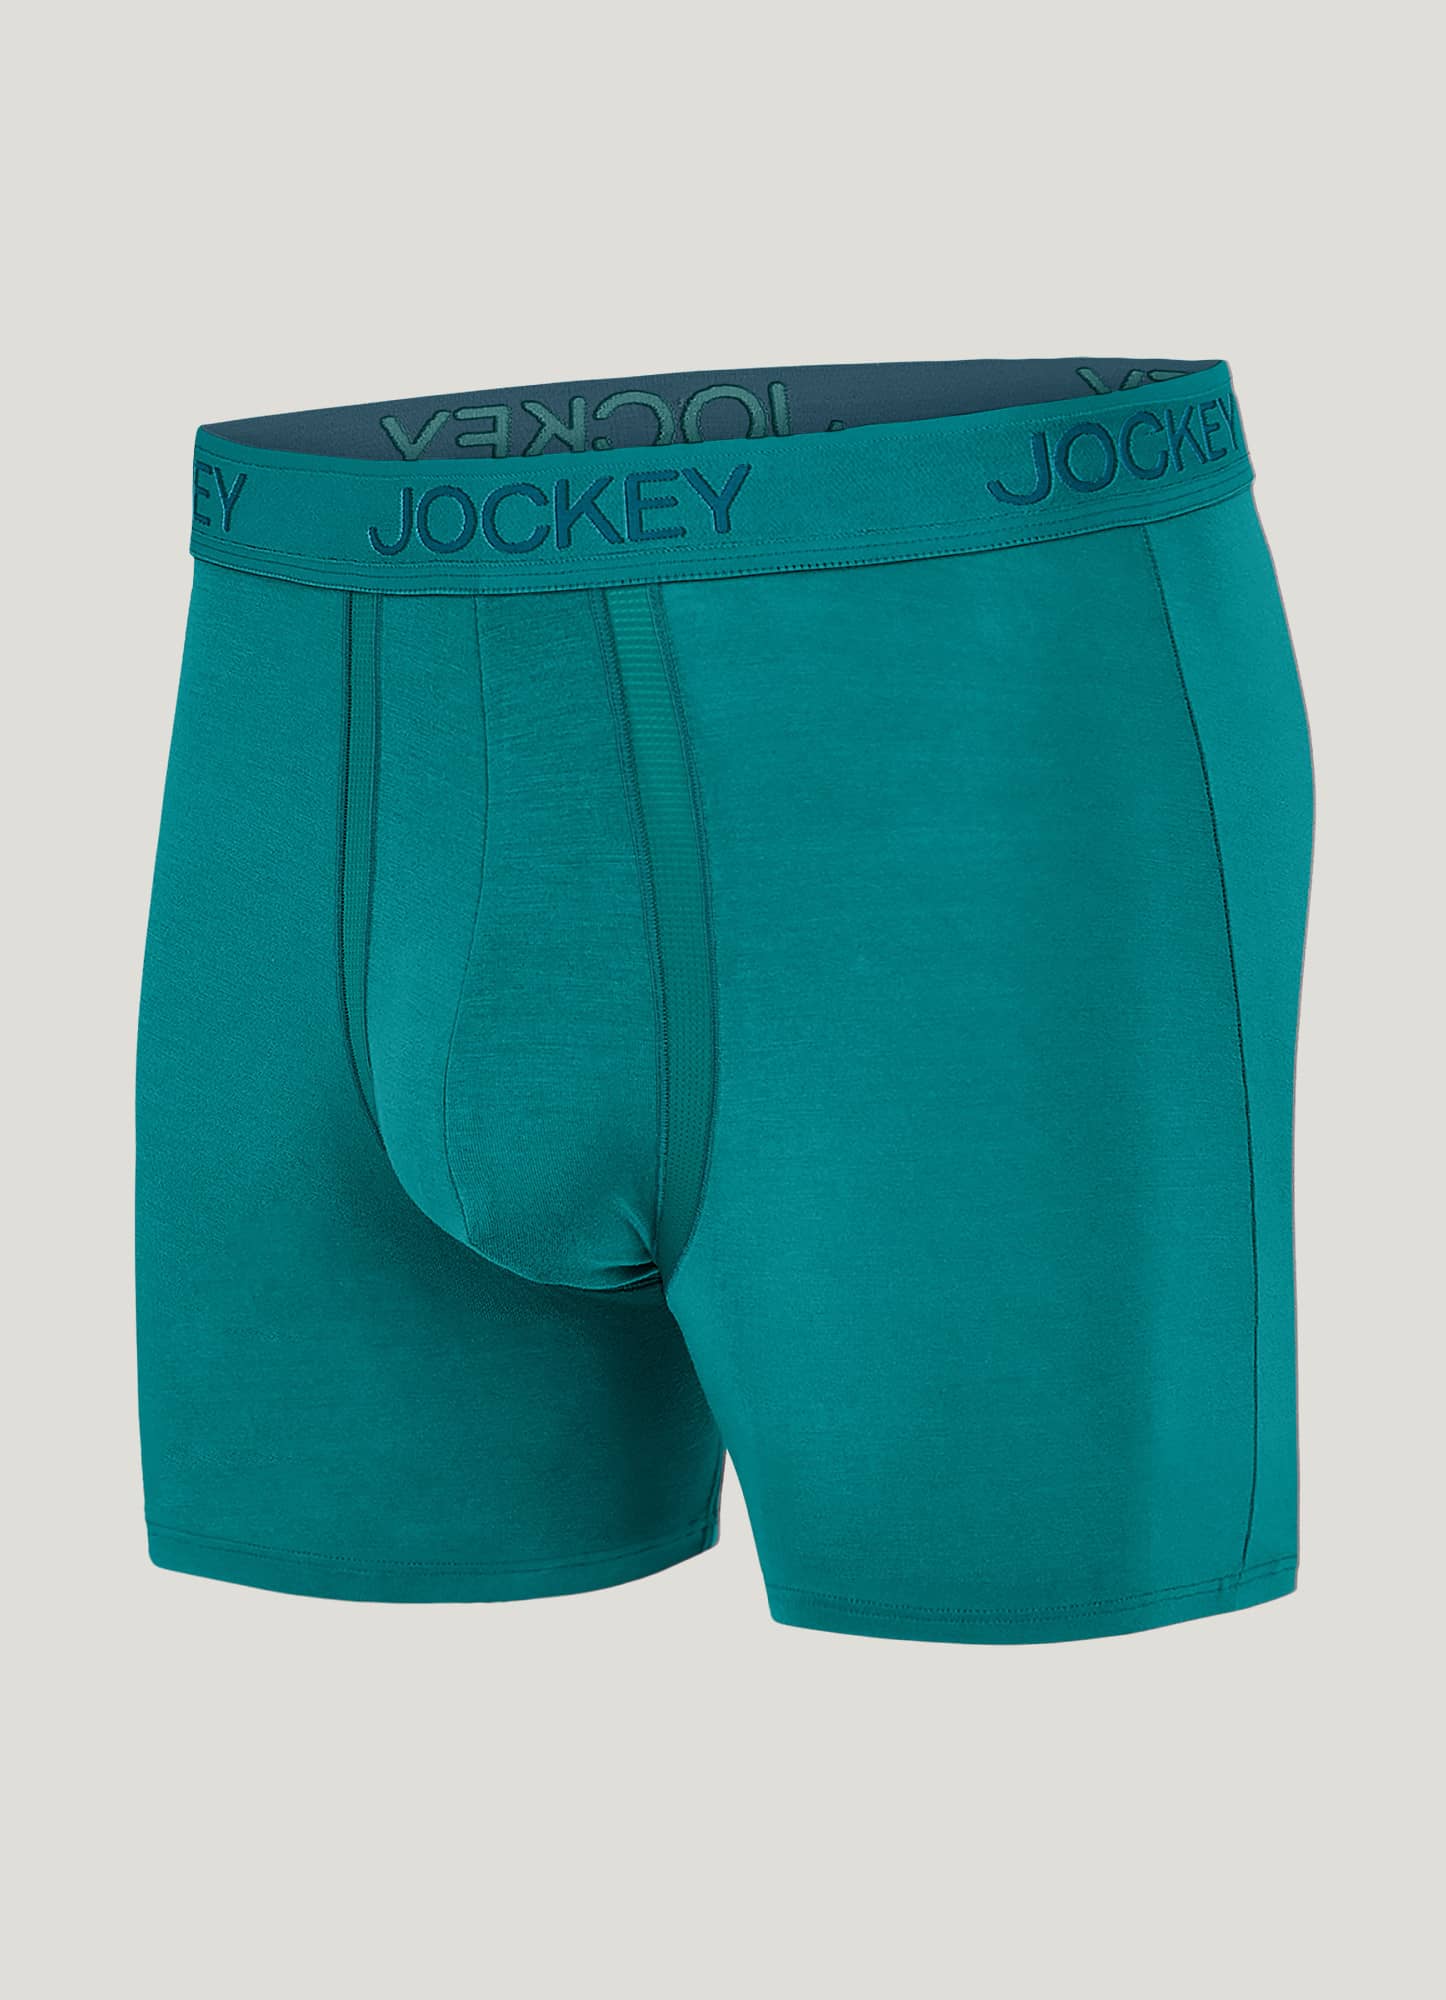 Men Underwear Modal Breathable Soft Trunk Underwear Boxer Brief Sport  Underwear 